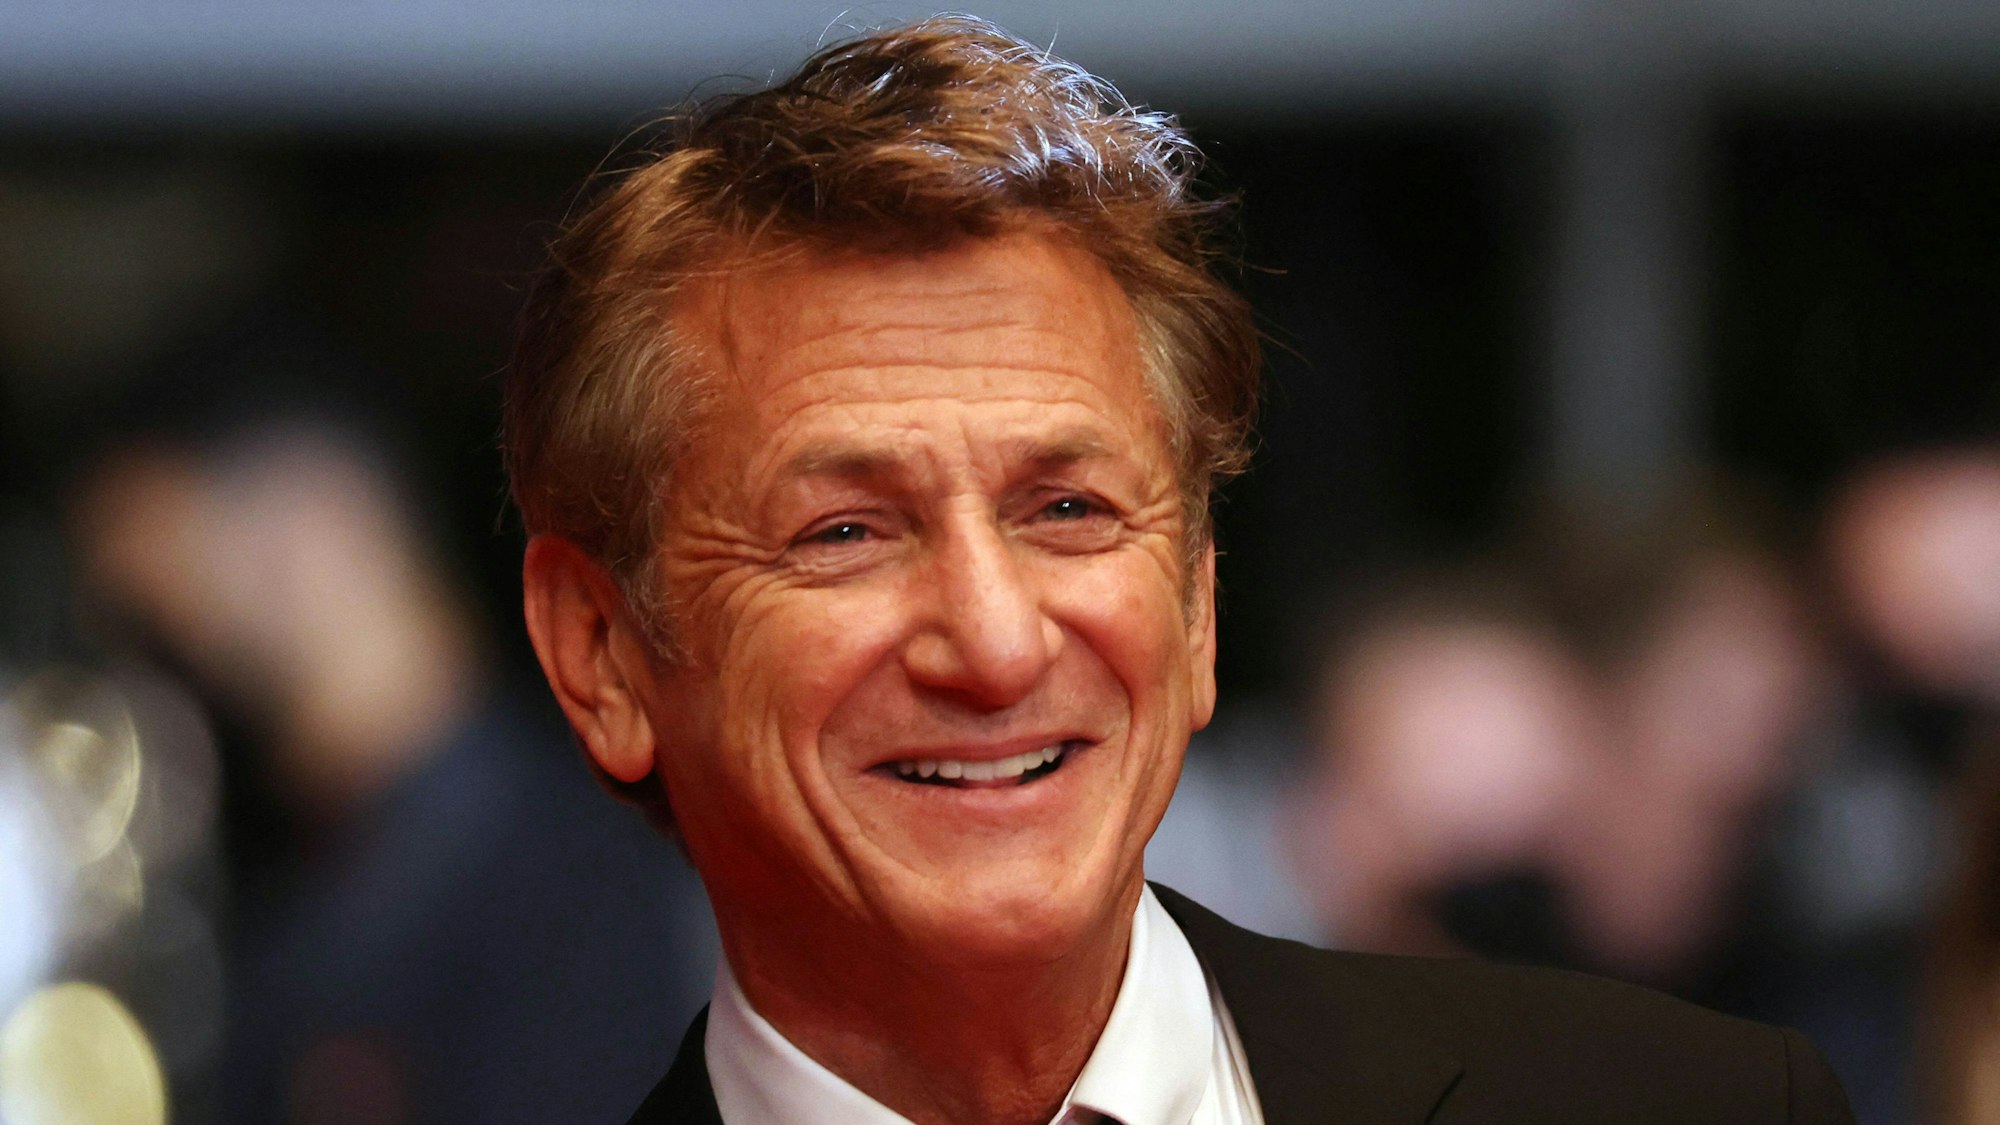 US-Schauspieler und Regisseur Sean Penn im Juli 2021 bei den Filmfestspielen in Cannes. Sean Penn arbeitet in Kiew an einer Dokumentation über den Ukraine-Krieg.